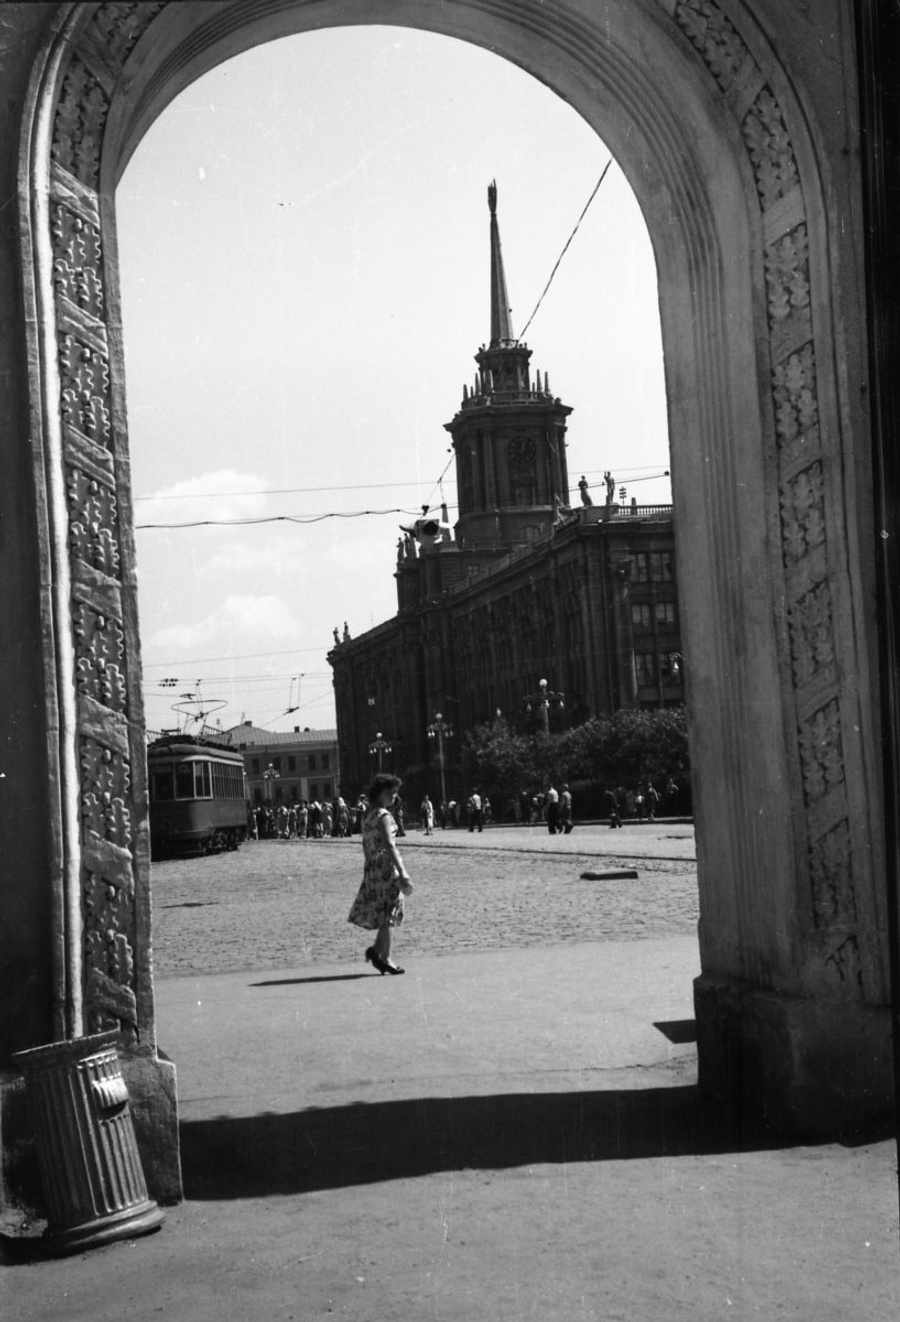 Добро пожаловать в центр Свердловска 1950-х годов! Вот такая арка украшала выход с аллеи на площадь 1905 года.